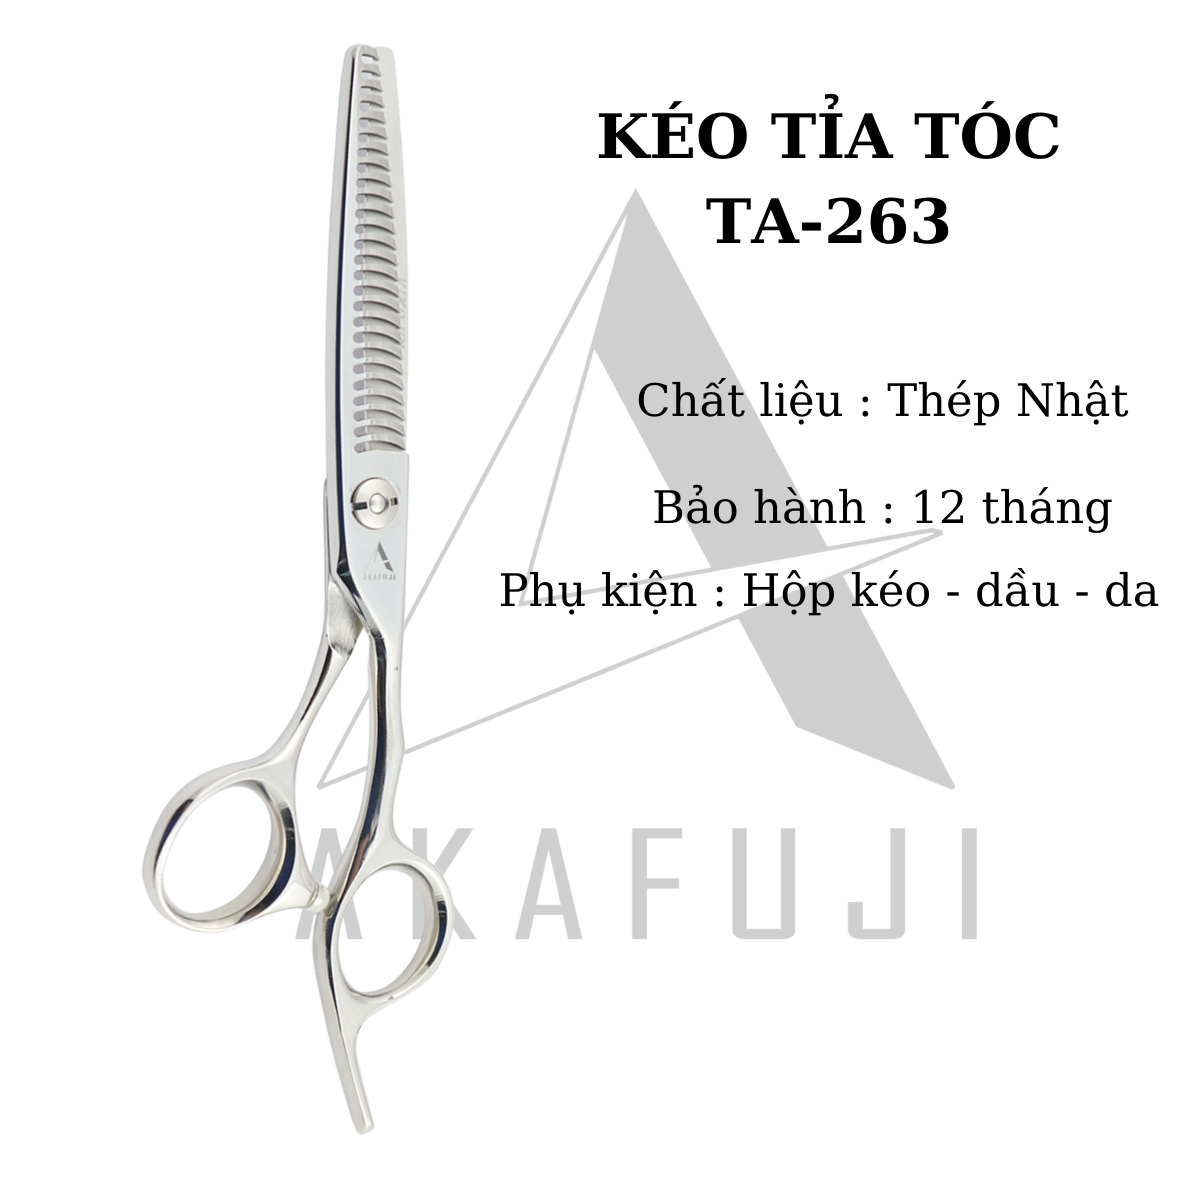 Kéo tỉa tóc  TA-263 răng cong (size 6.0 inches)